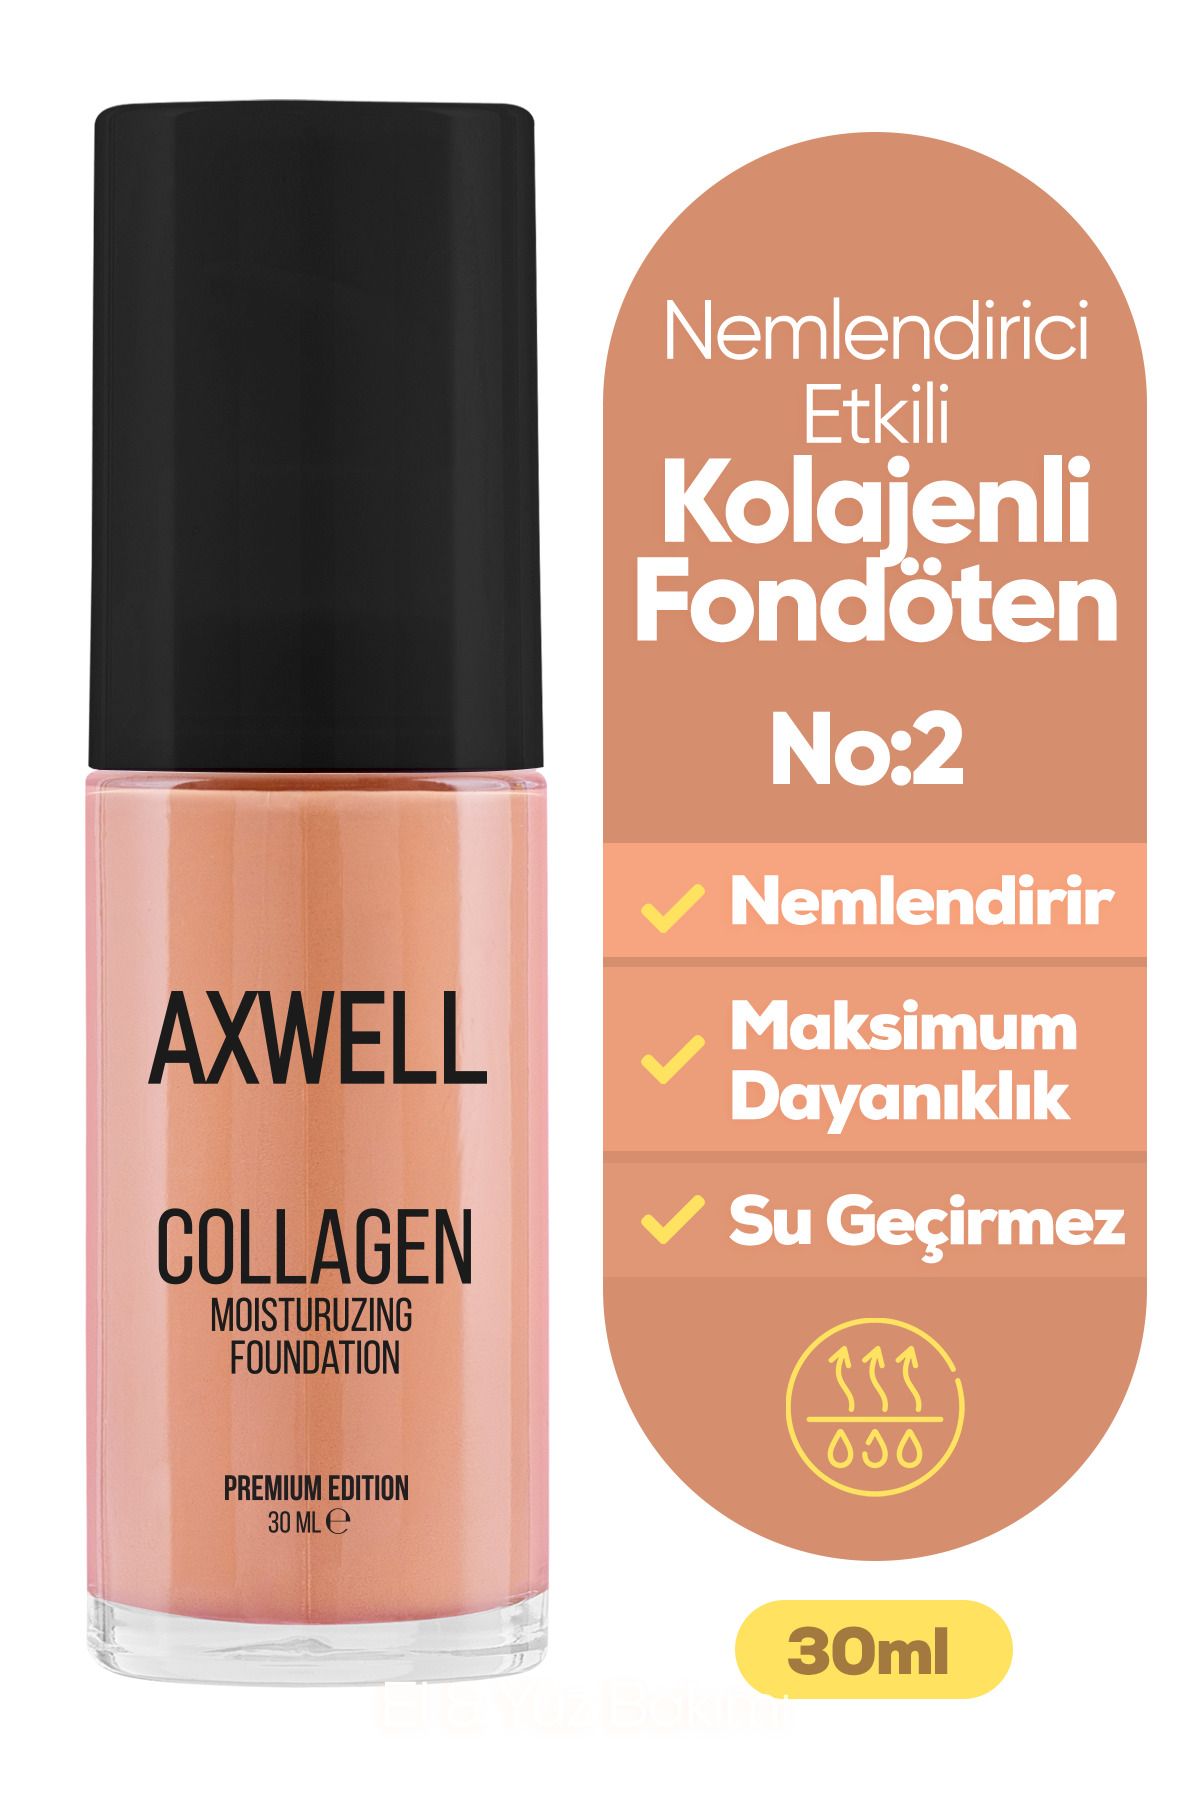 AXWELL Axwell Premıum Edıtıon Collagen Foundatıon ( Kolajenli Fondöten ) Nemlendirici Etki 30 ml Orta Ton